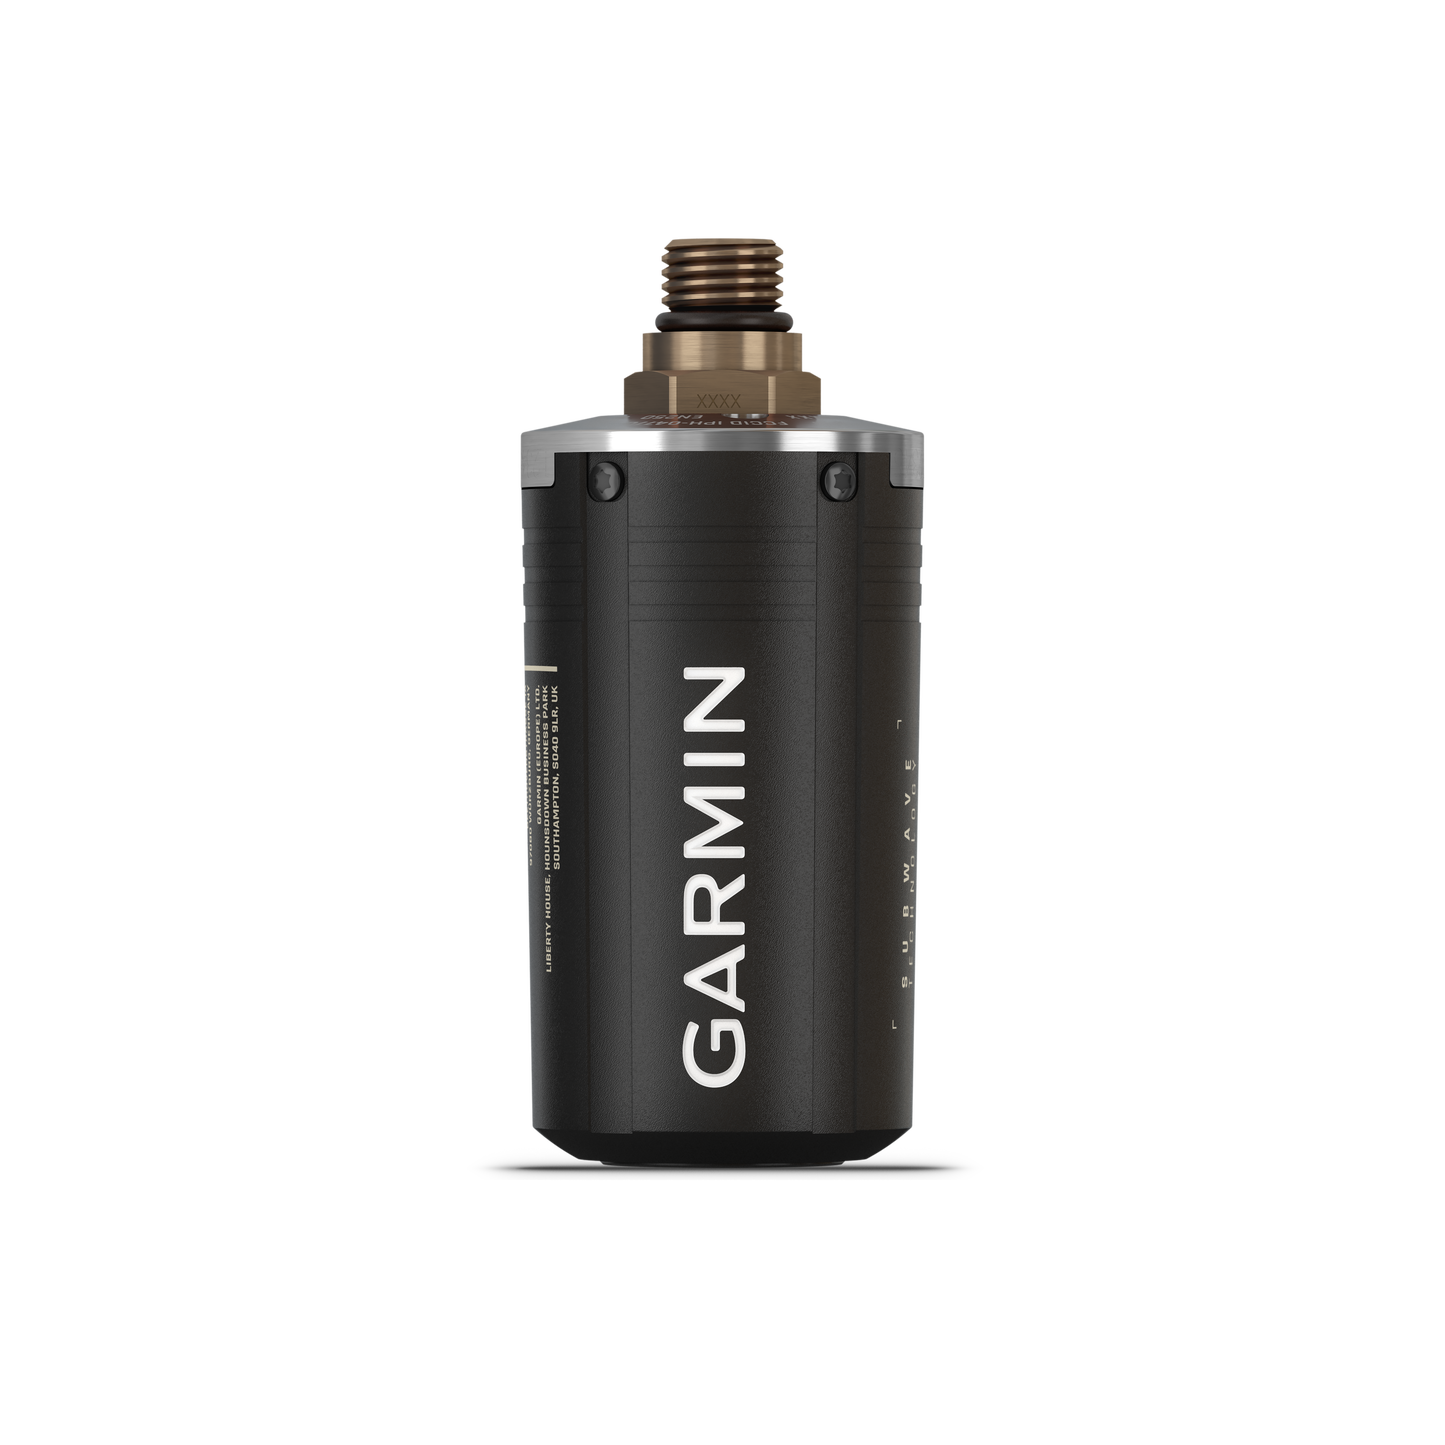 Garmin Descent™ T2 收发器